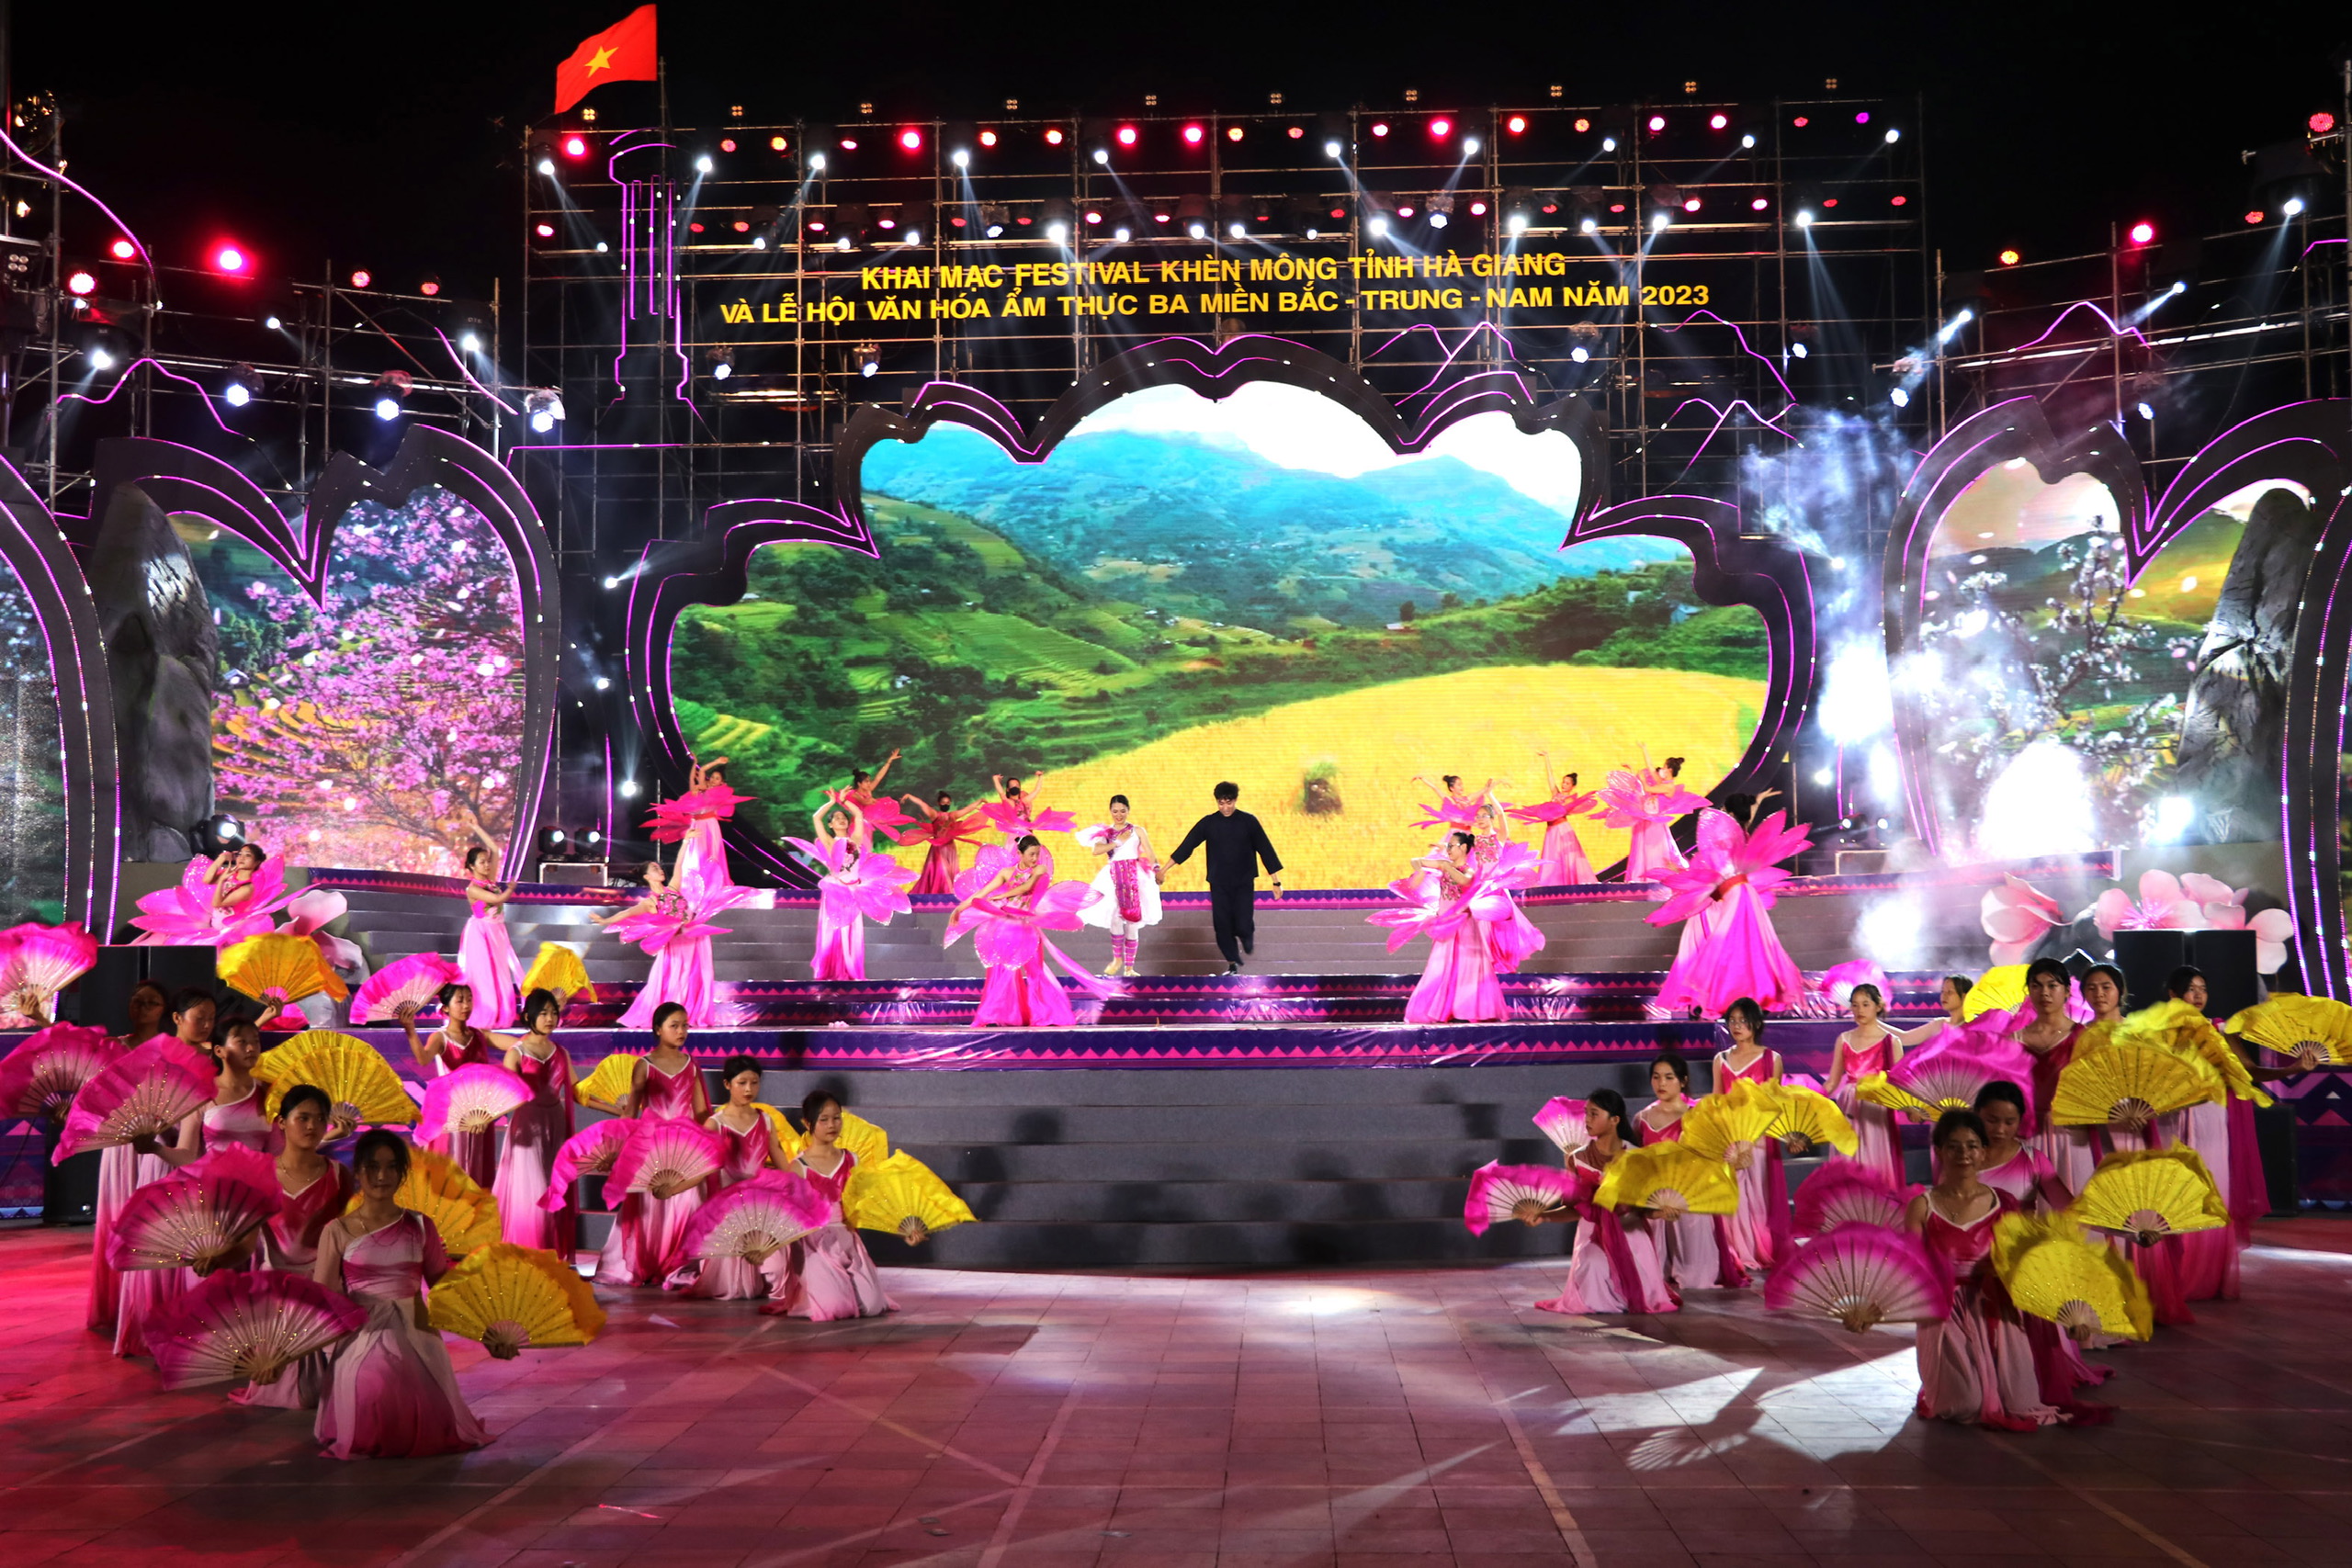 Hà Giang: Khai mạc Festival Khèn Mông và Lễ hội ẩm thực 3 miền Bắc - Trung - Nam năm 2023